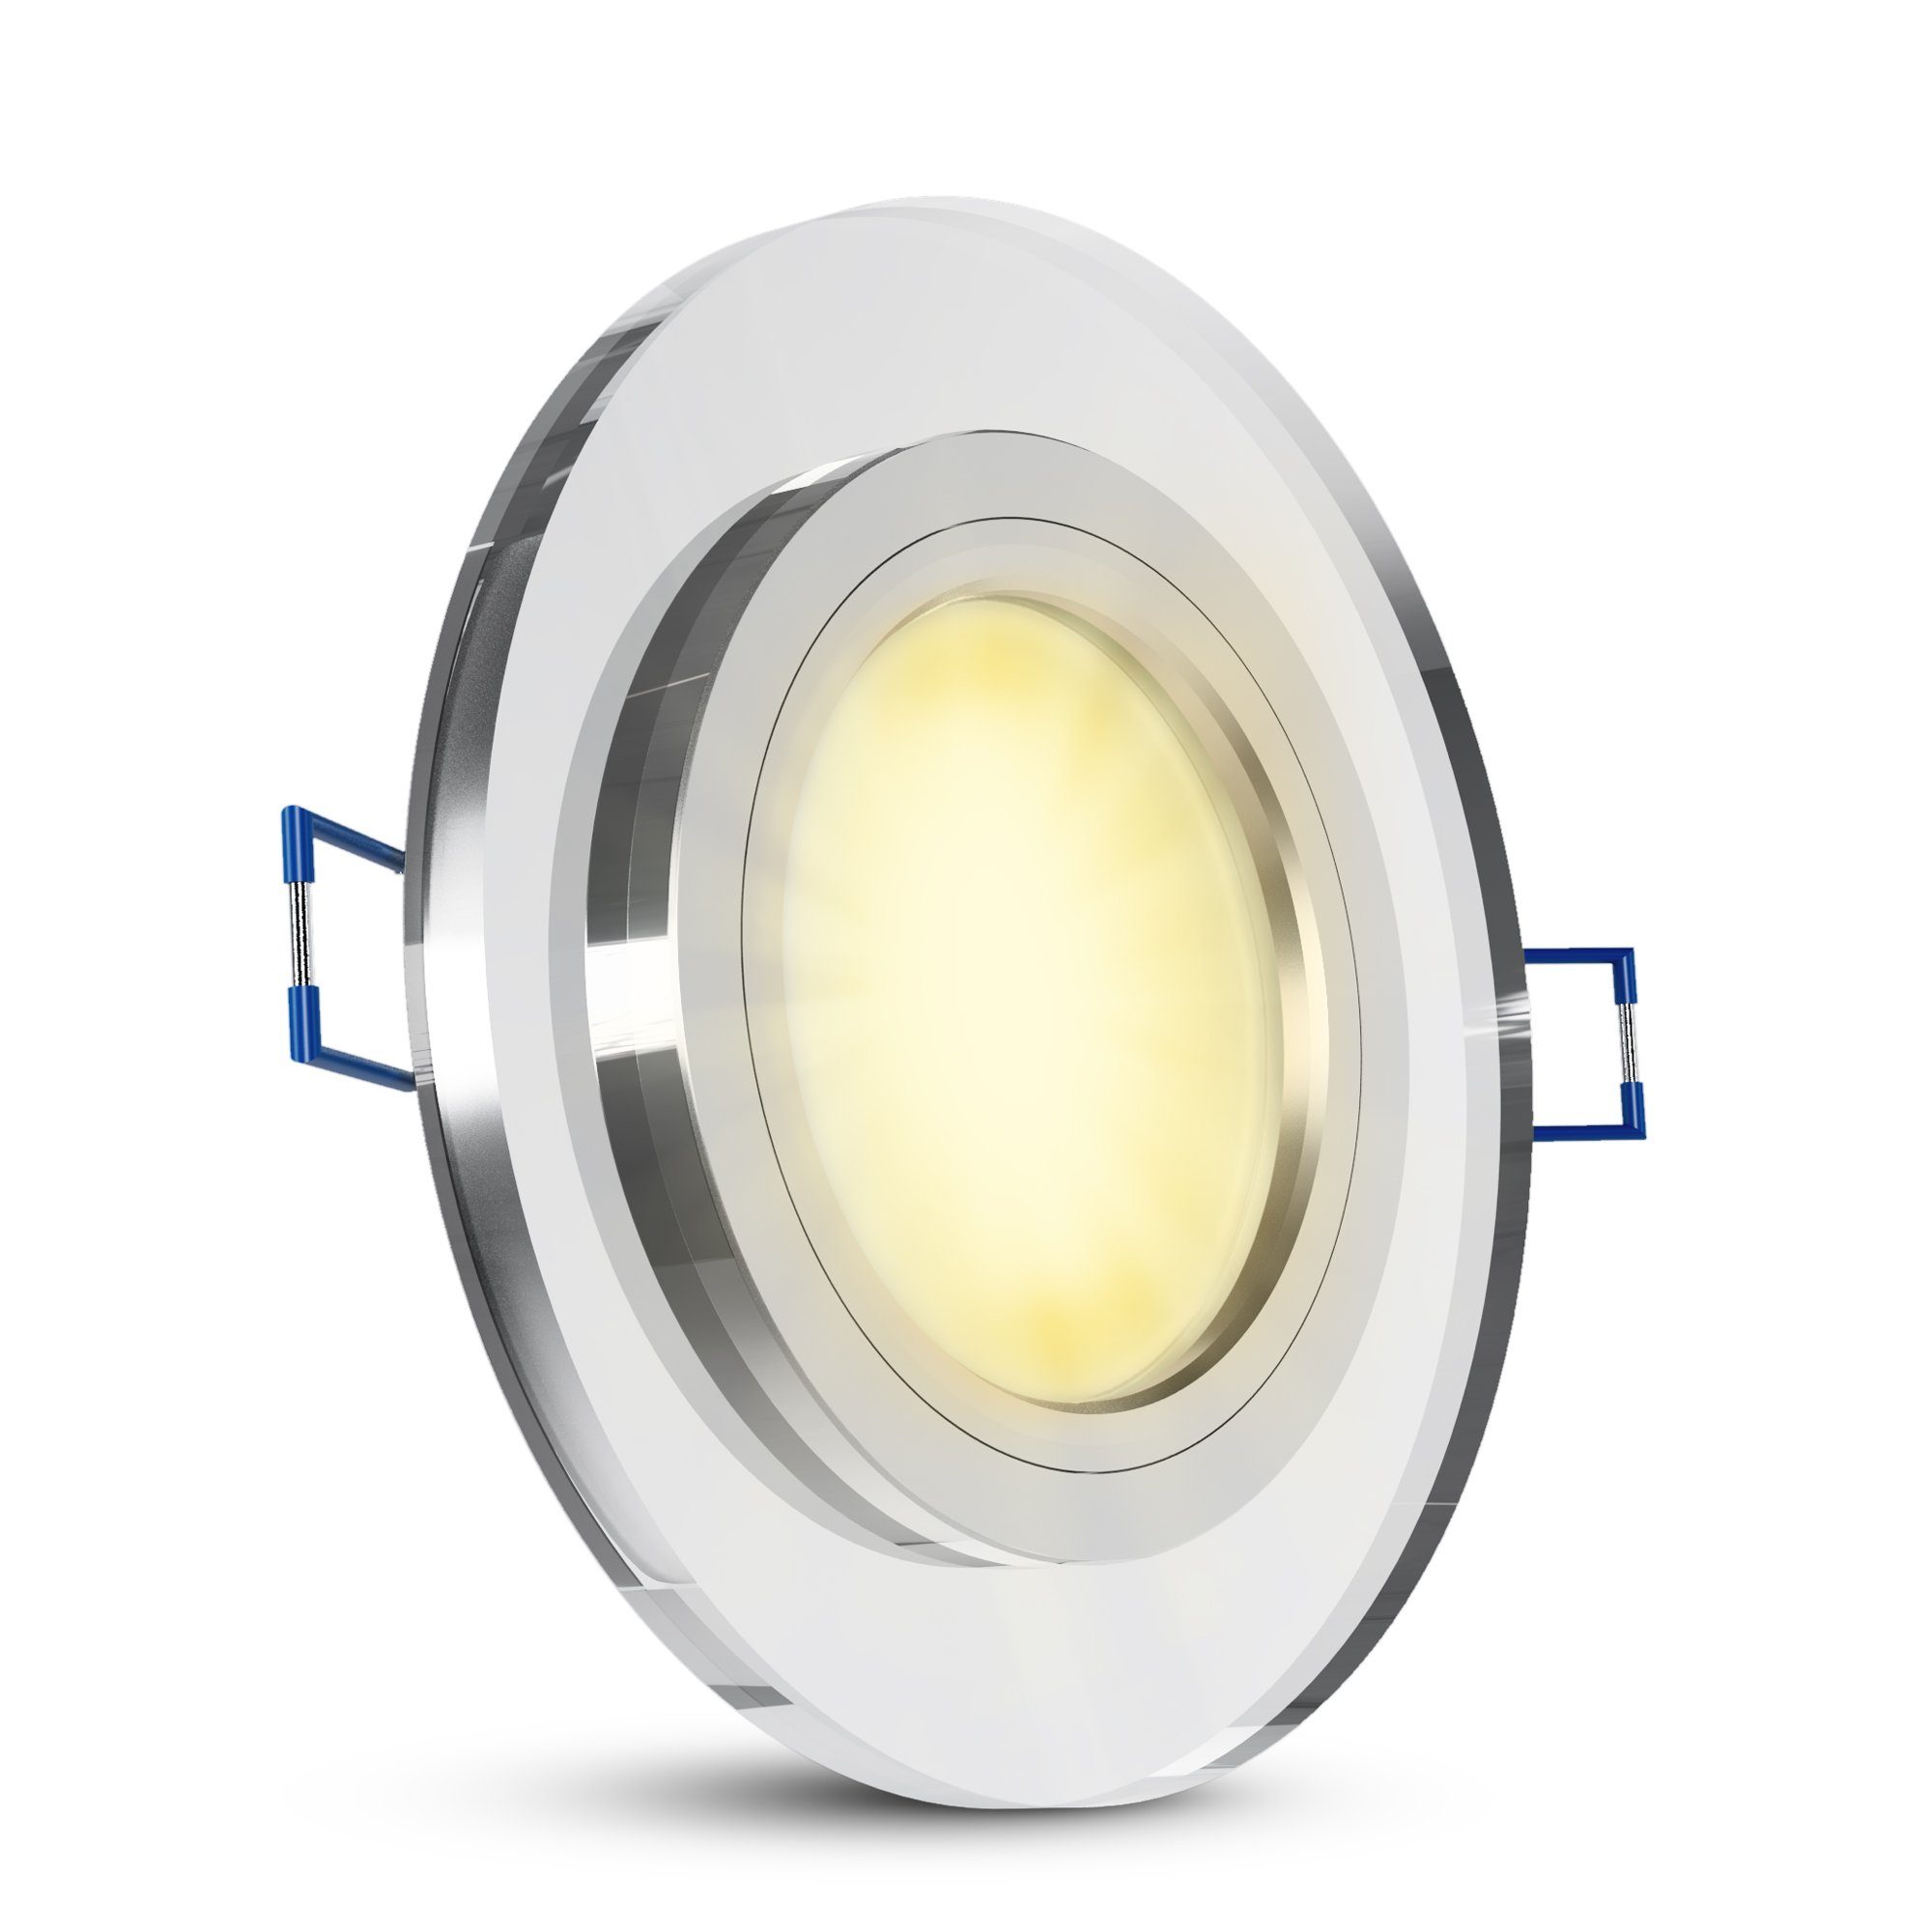 SSC-LUXon LED Einbaustrahler LED-Einbauspot Echtglas flach, rund, klar spiegelnd, fourSTEP Dim LED, Warmweiß | Strahler